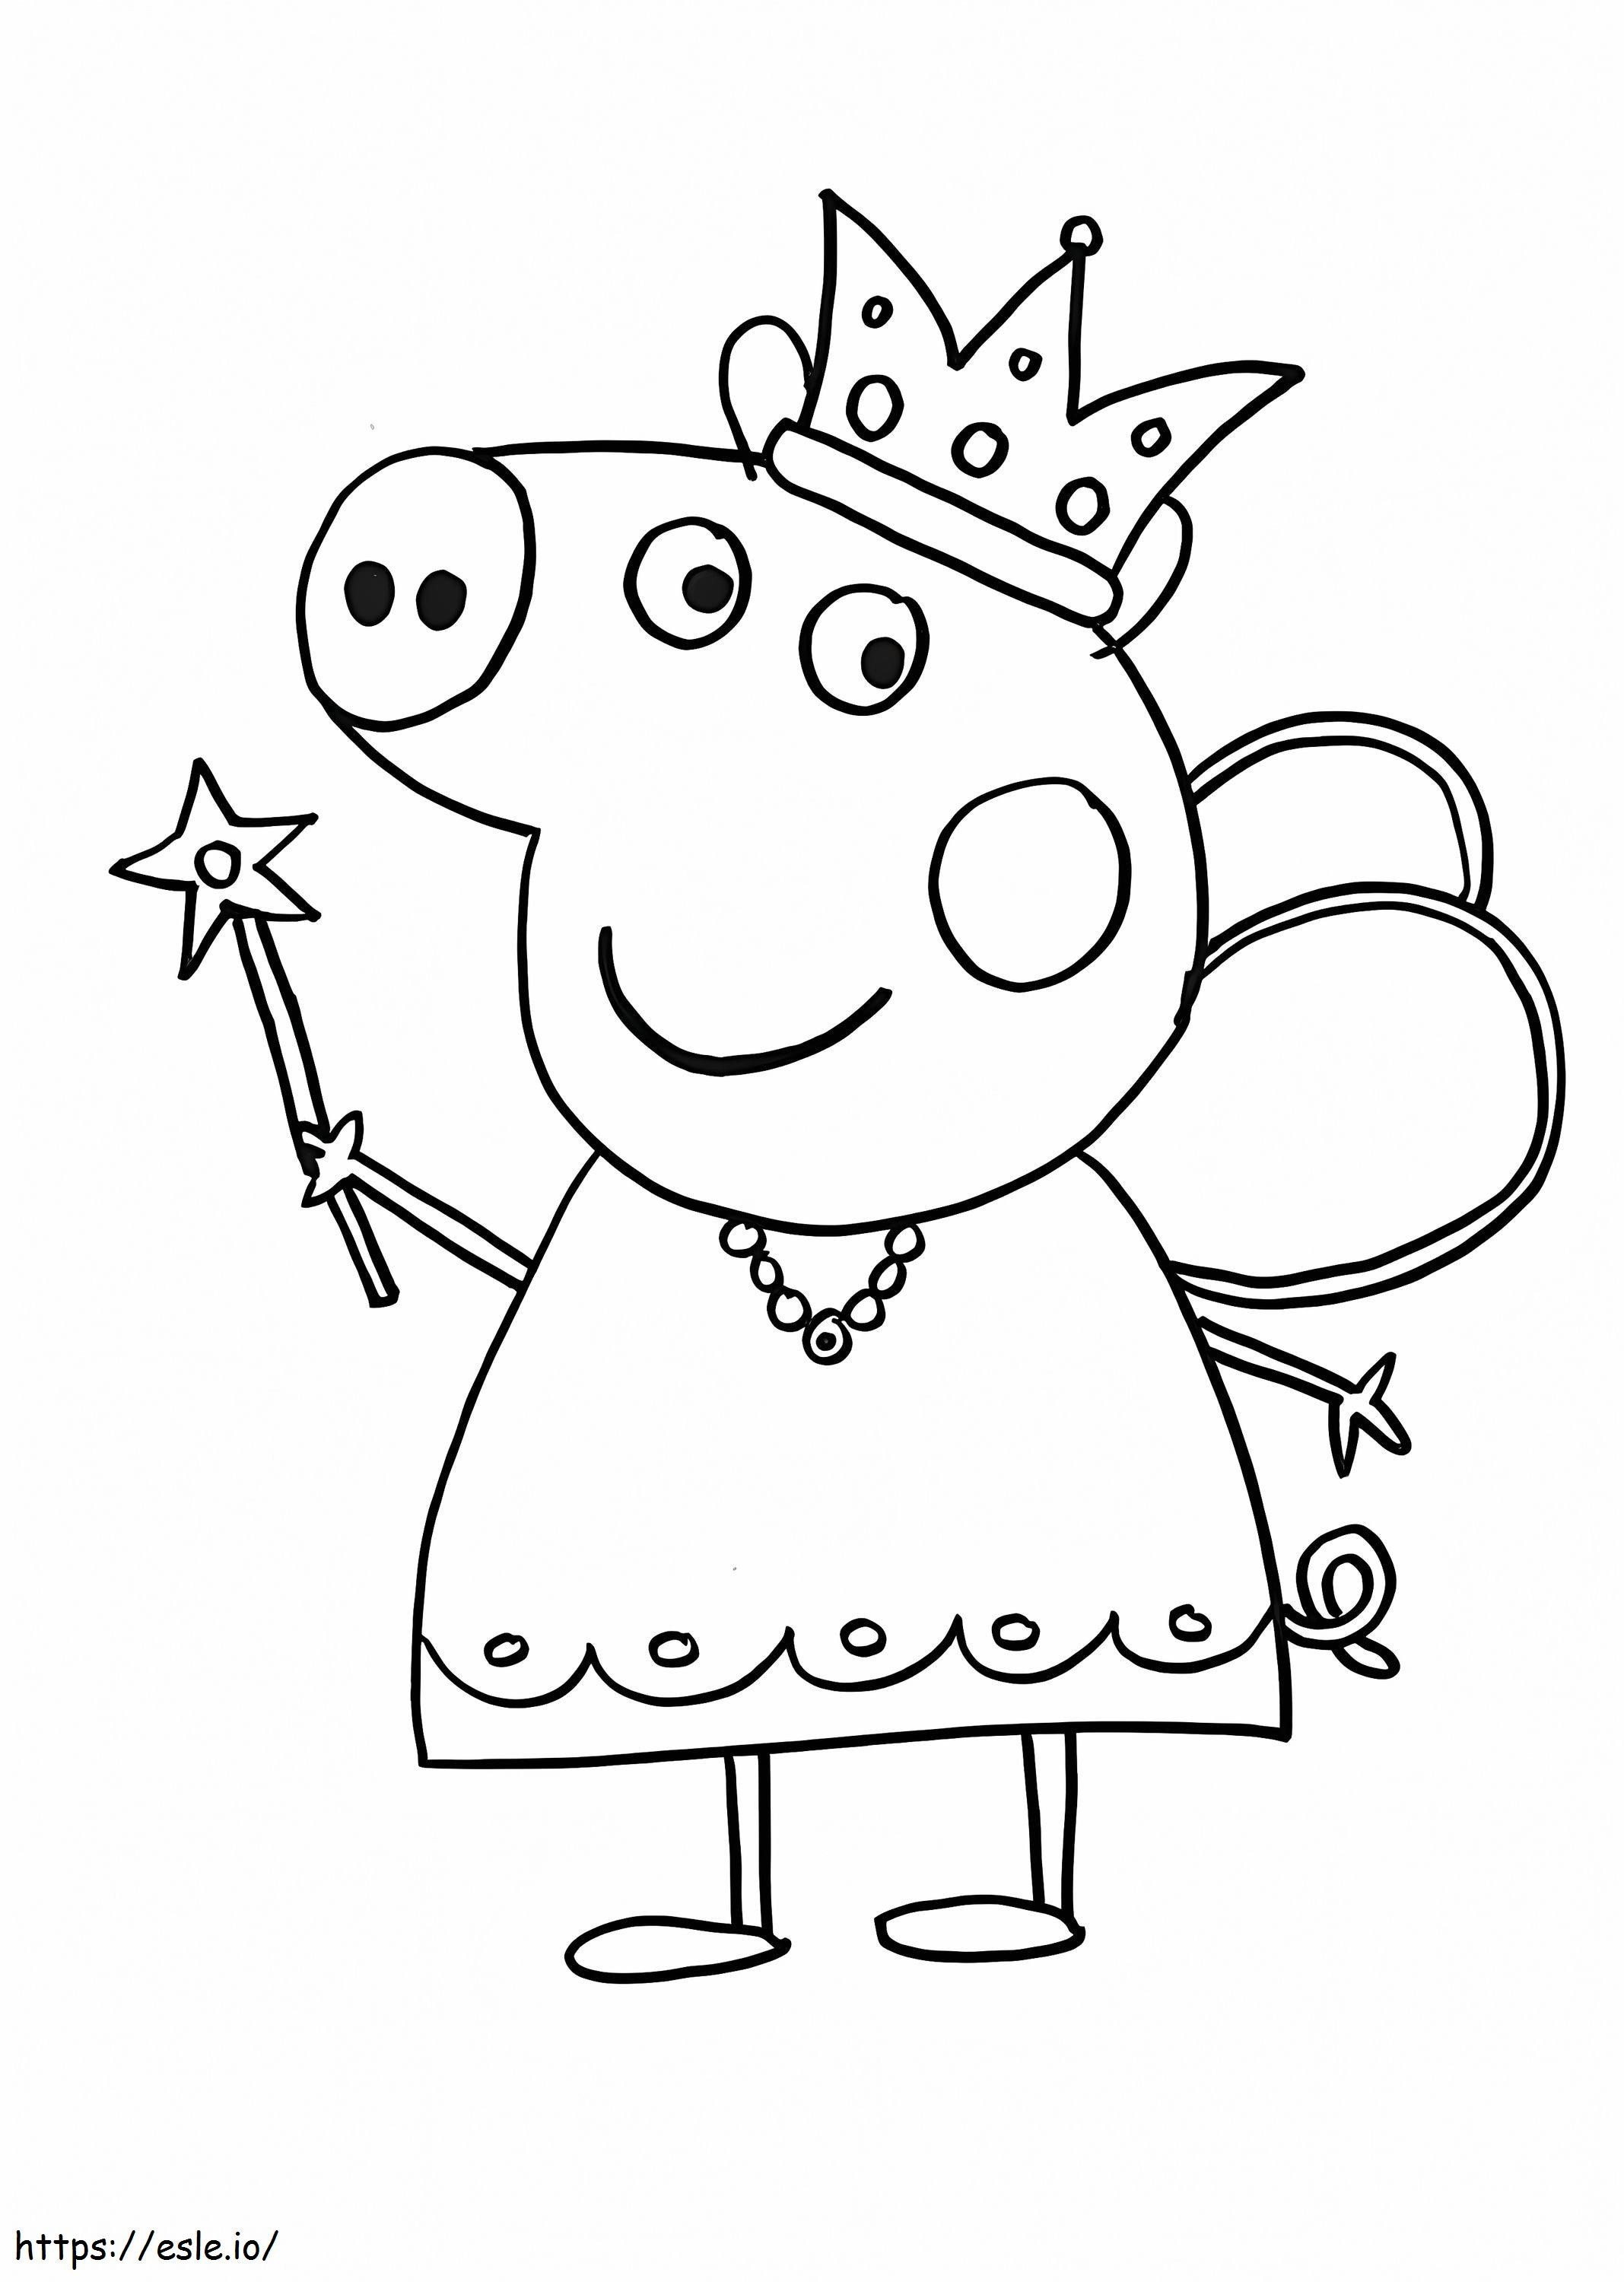 Princess Peppa Pig coloring page